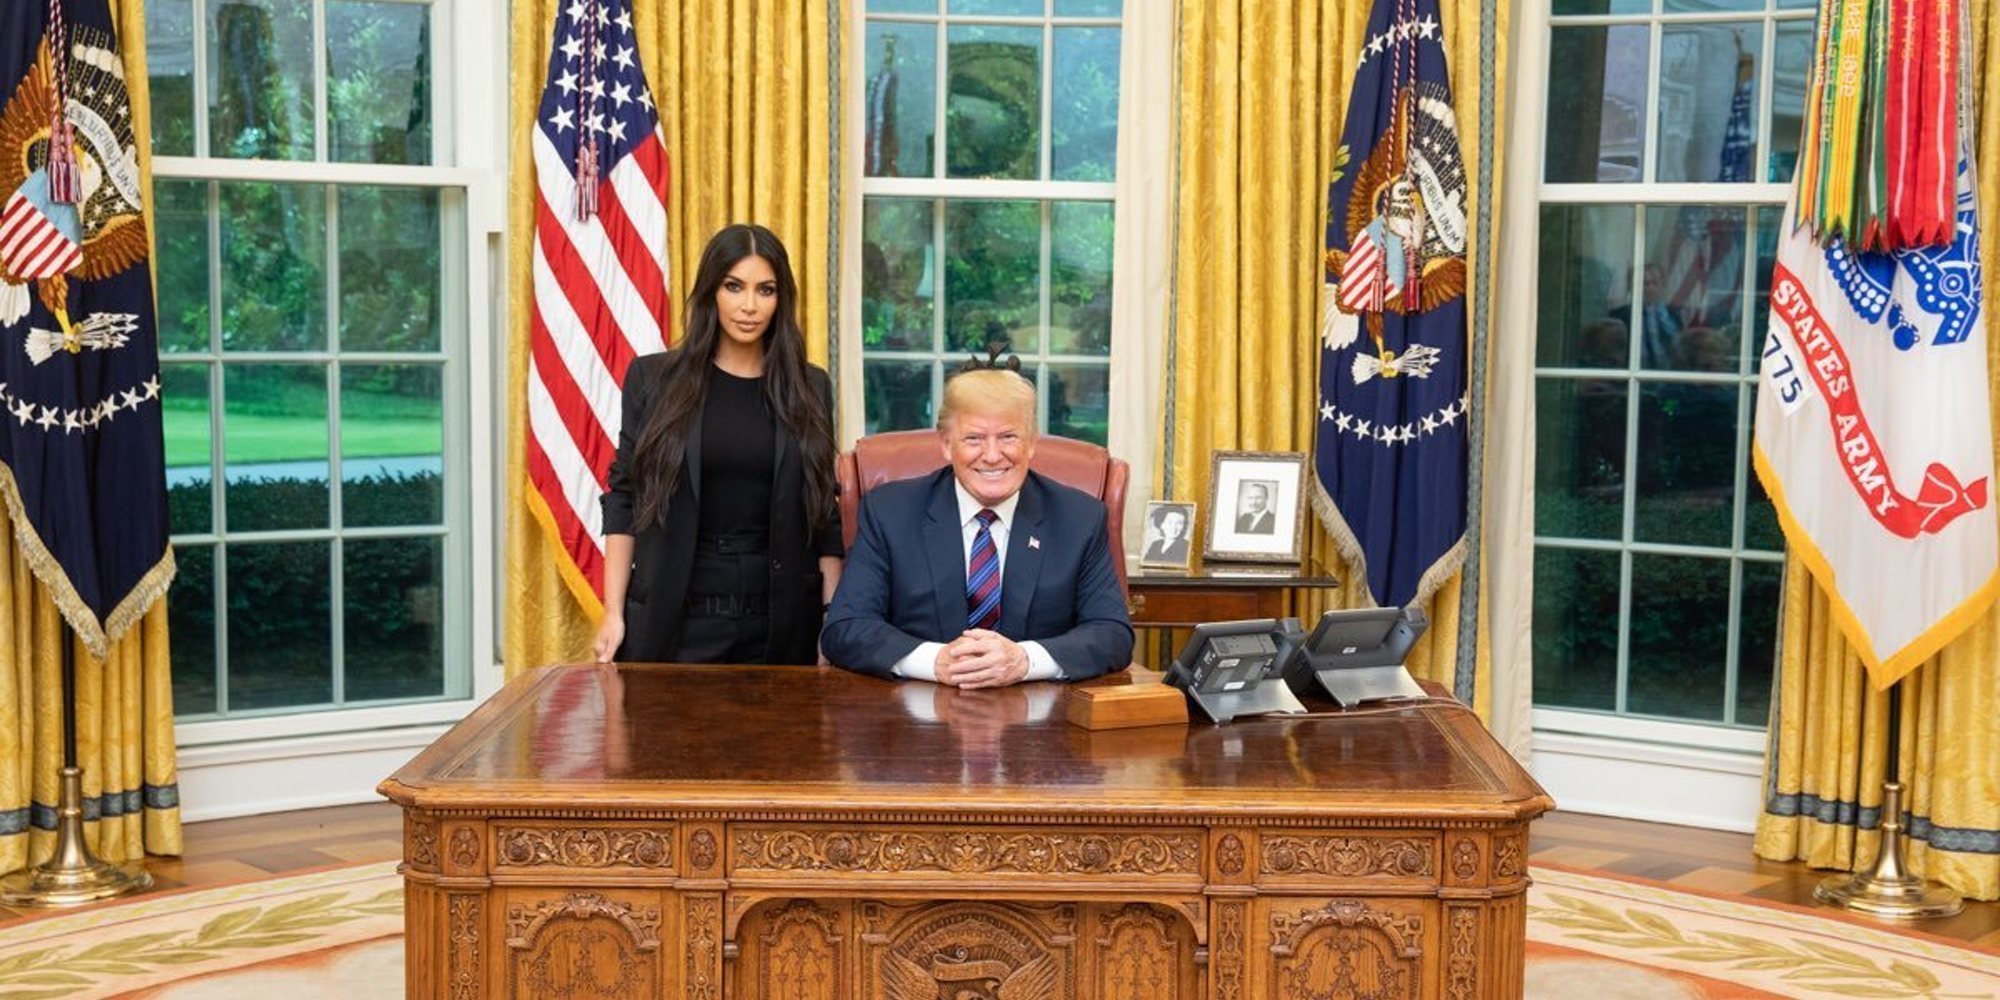 Kim Kardashian habla sobre la política de separación de familias de Donald Trump